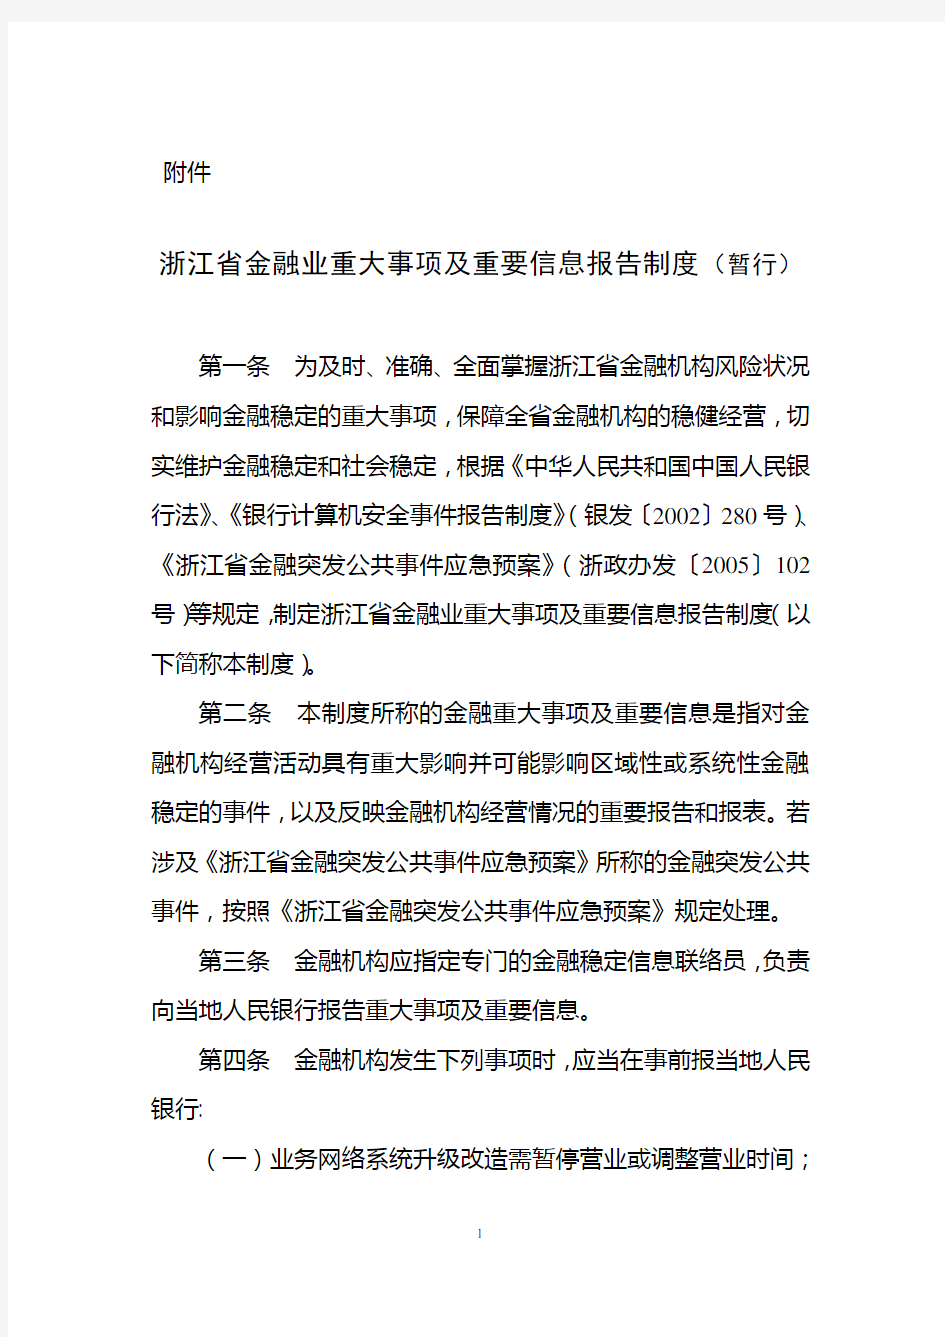 浙江省金融重大事项及重要信息报告制度